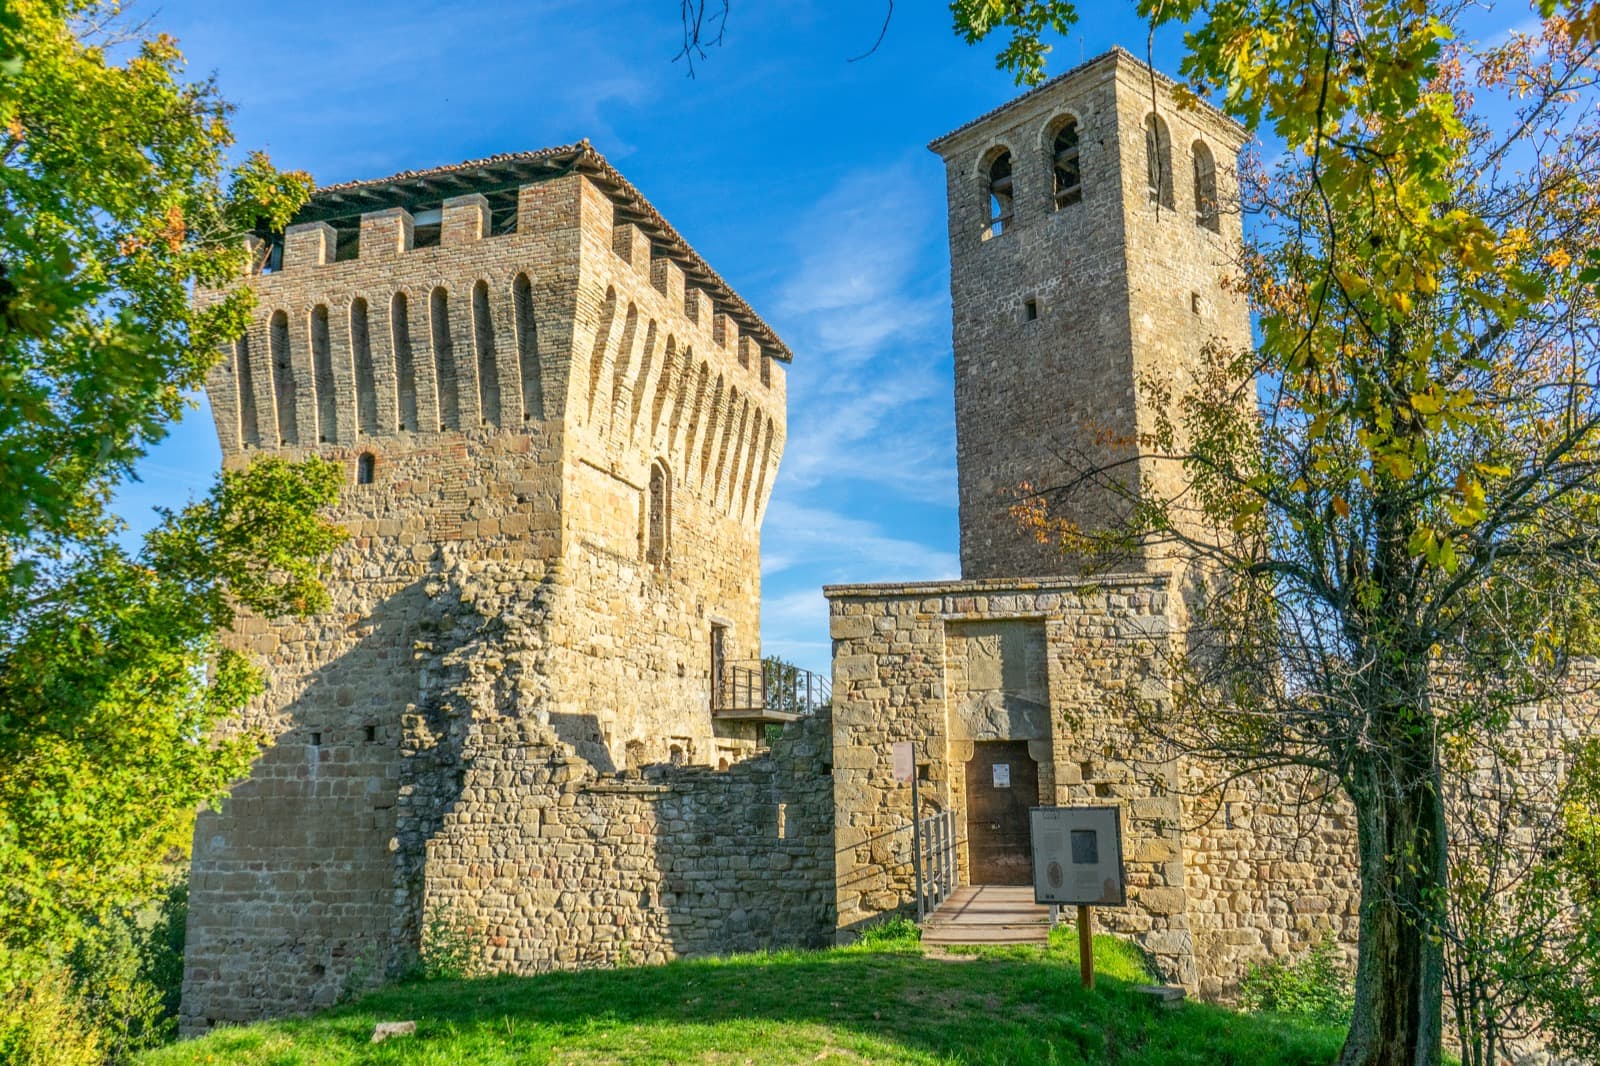 Castello di Sarzano Ph. Martina Santamaria @pimpmytripit